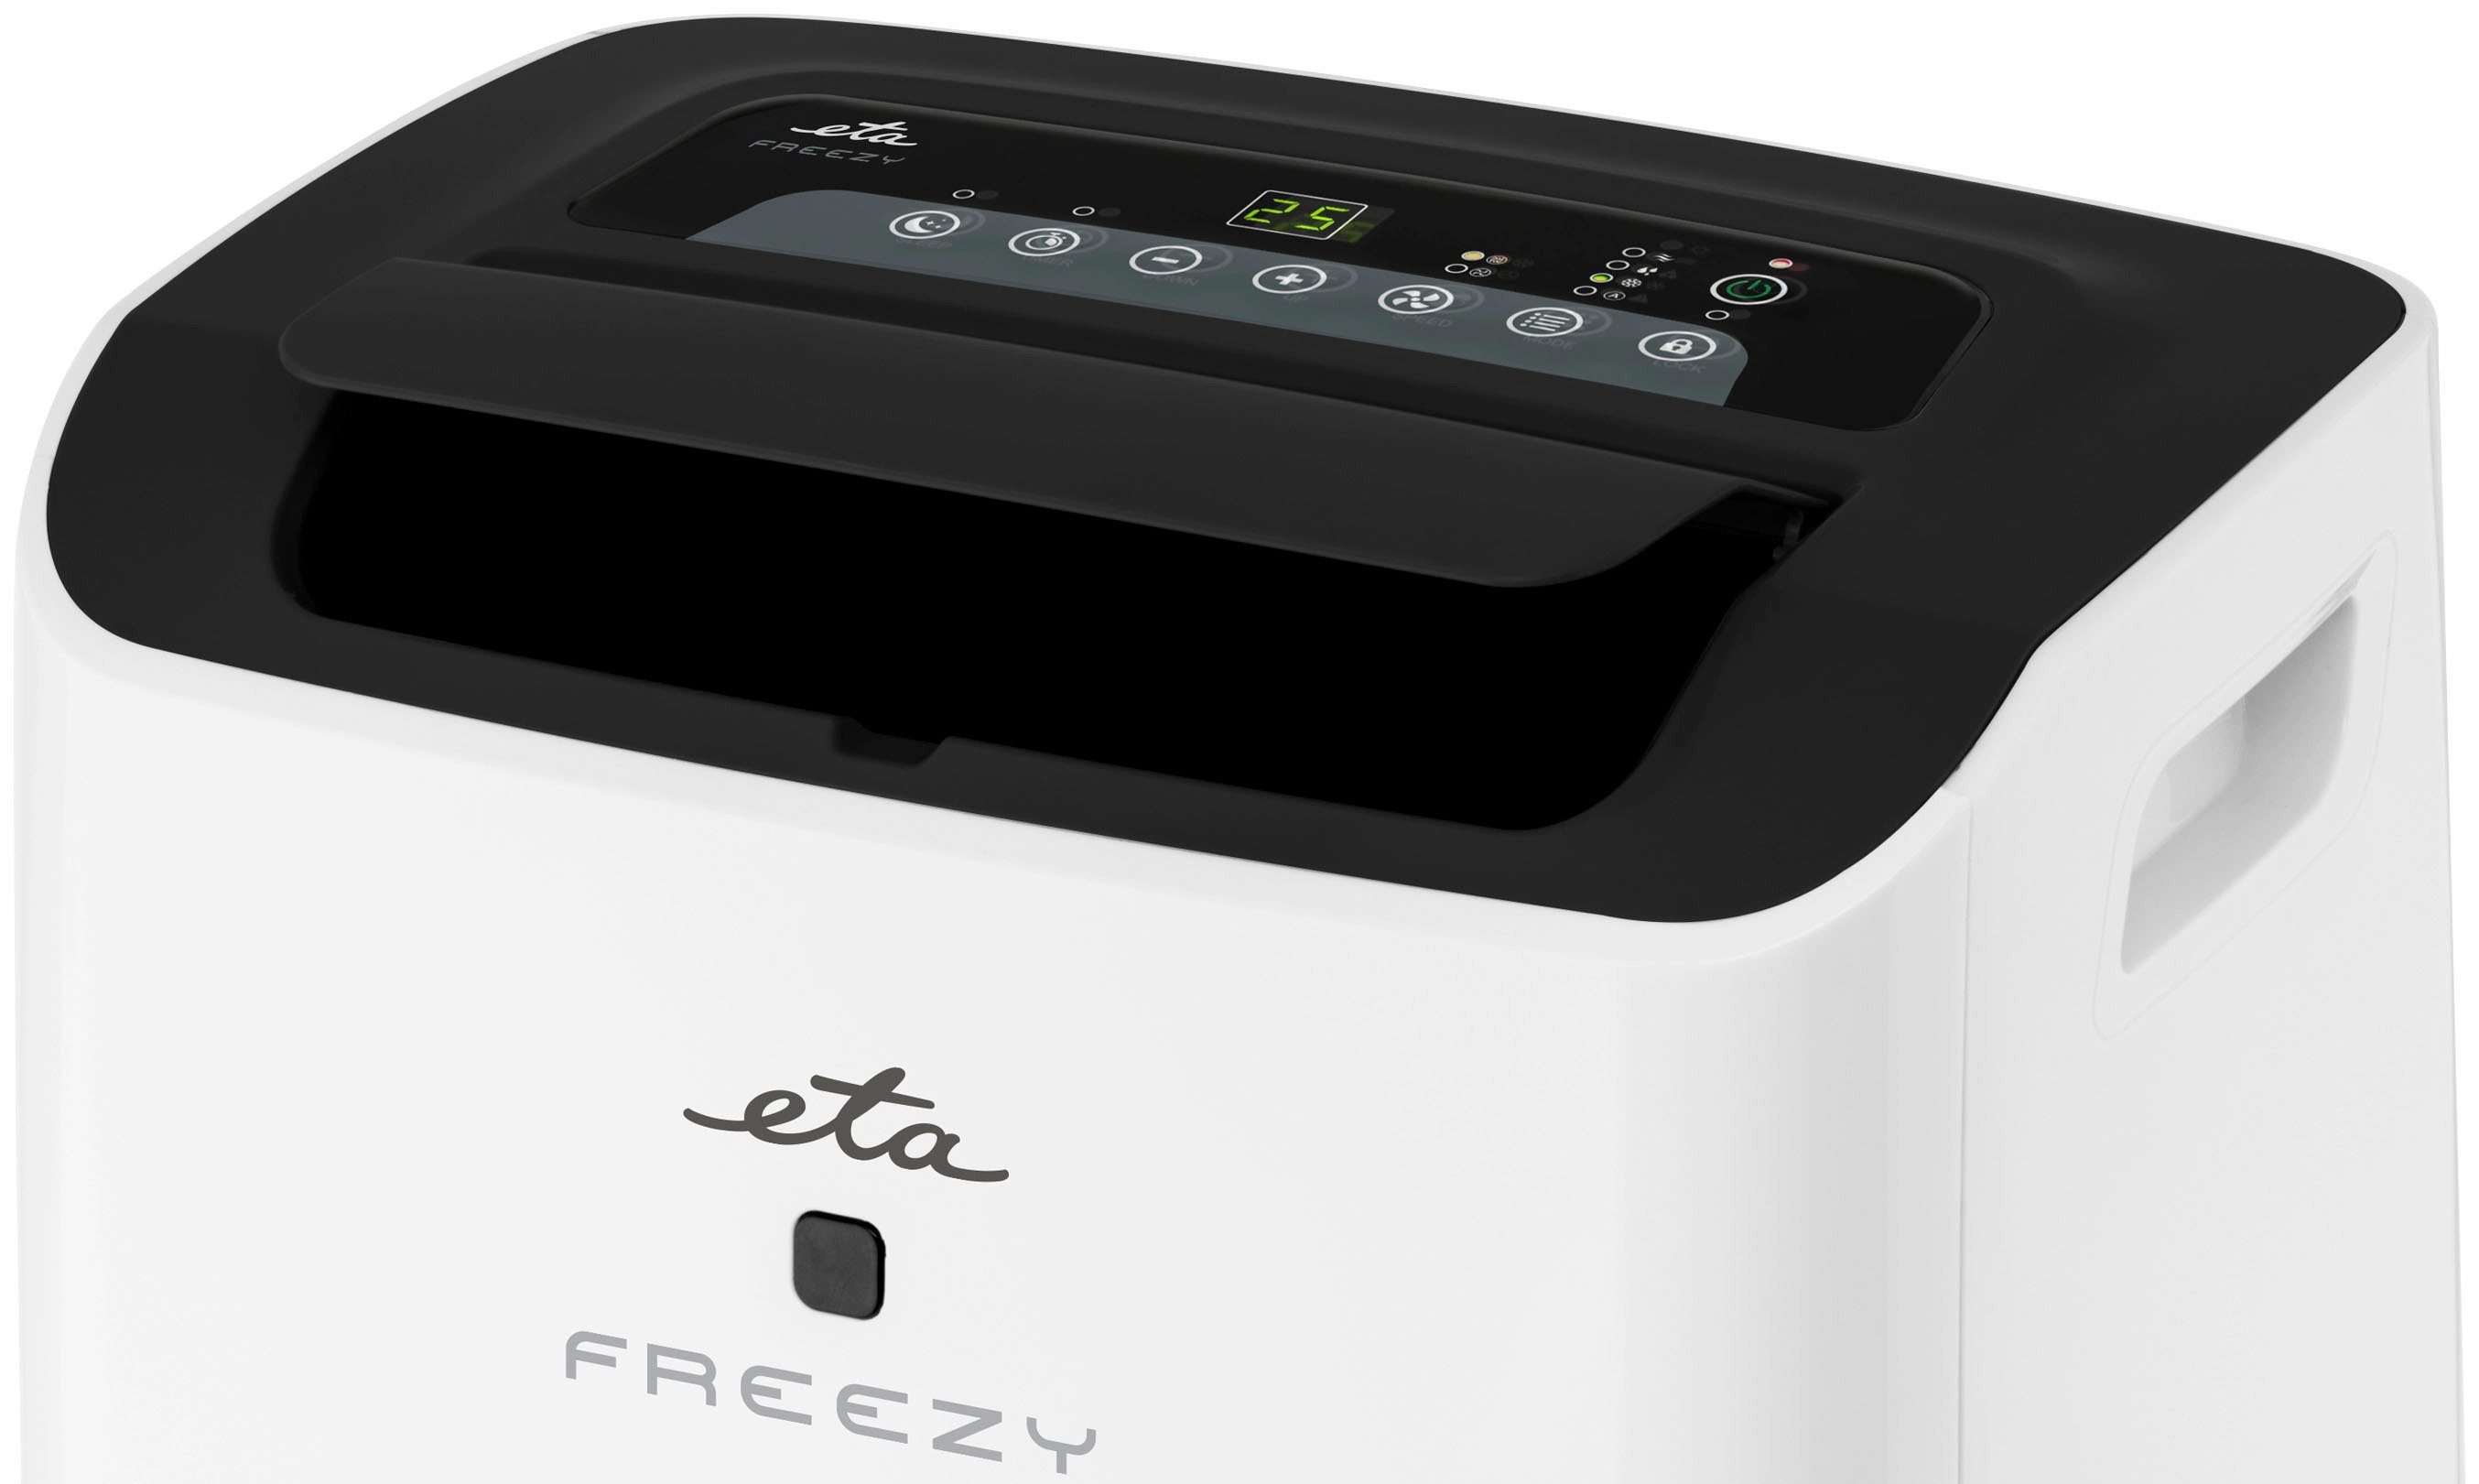 eta 3-in-1-Klimagerät Freezy, 1 Fassungsvermögen l